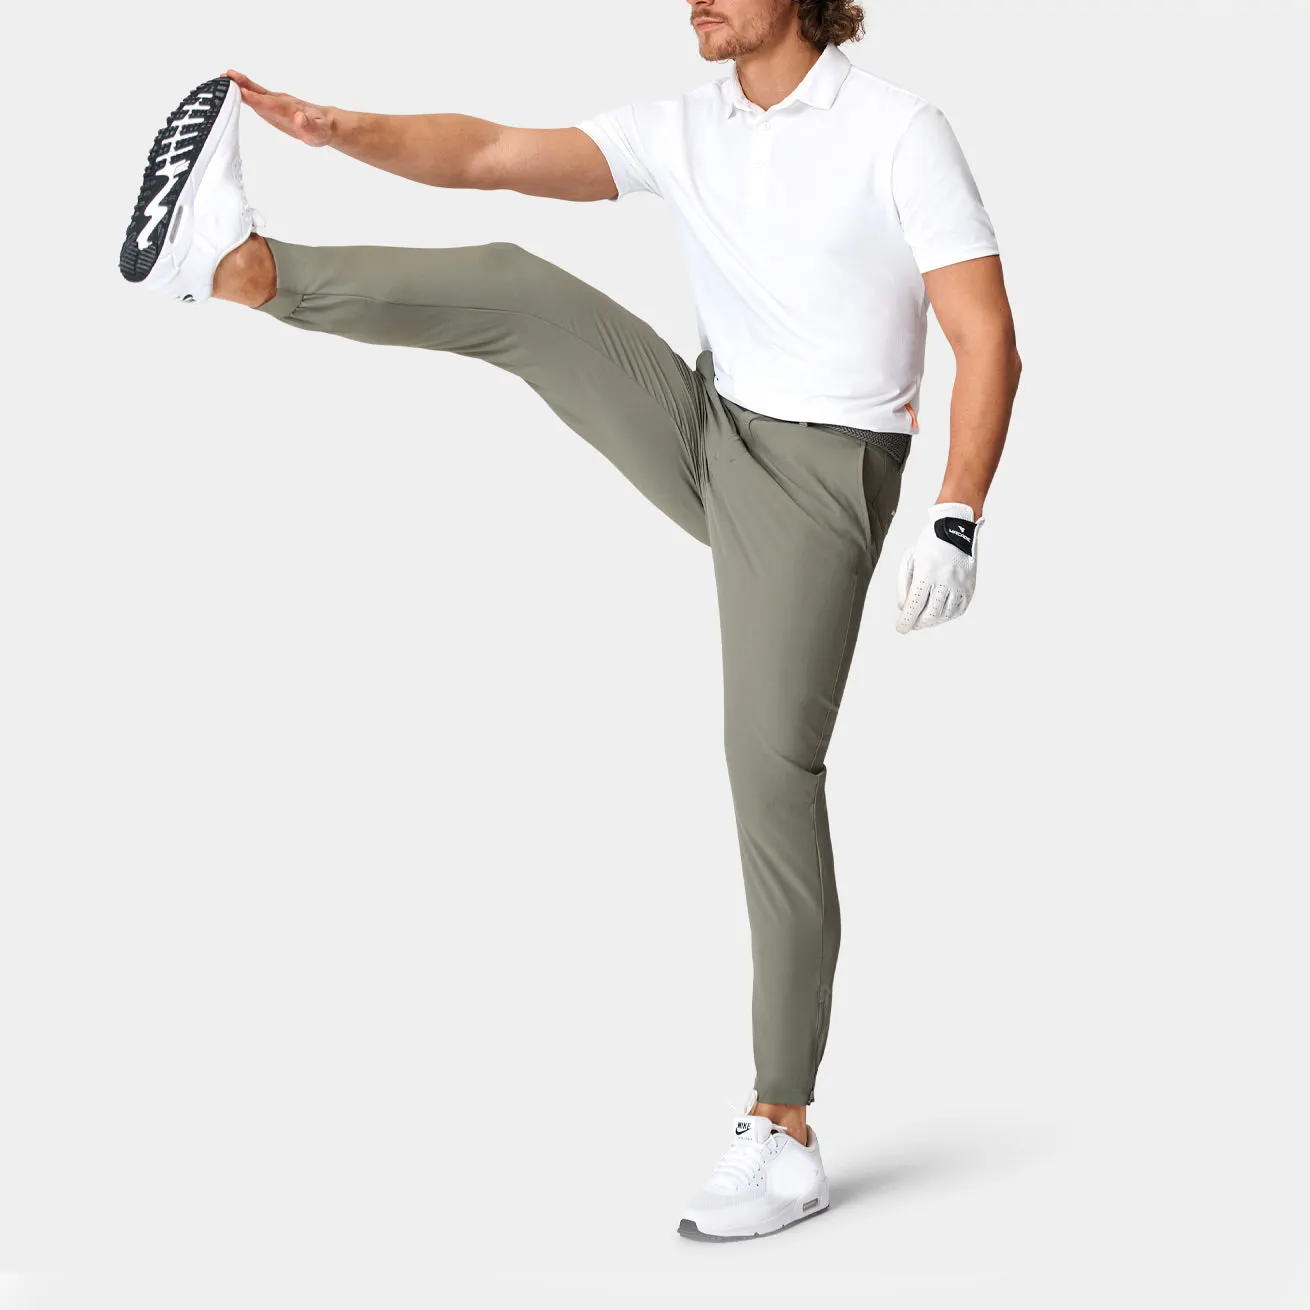 Notizie all'ingrosso di alta qualità pantaloni dritti golf abbigliamento uomo ufficio chino cotone pantaloni formali da uomo pantaloni pantaloni da golf